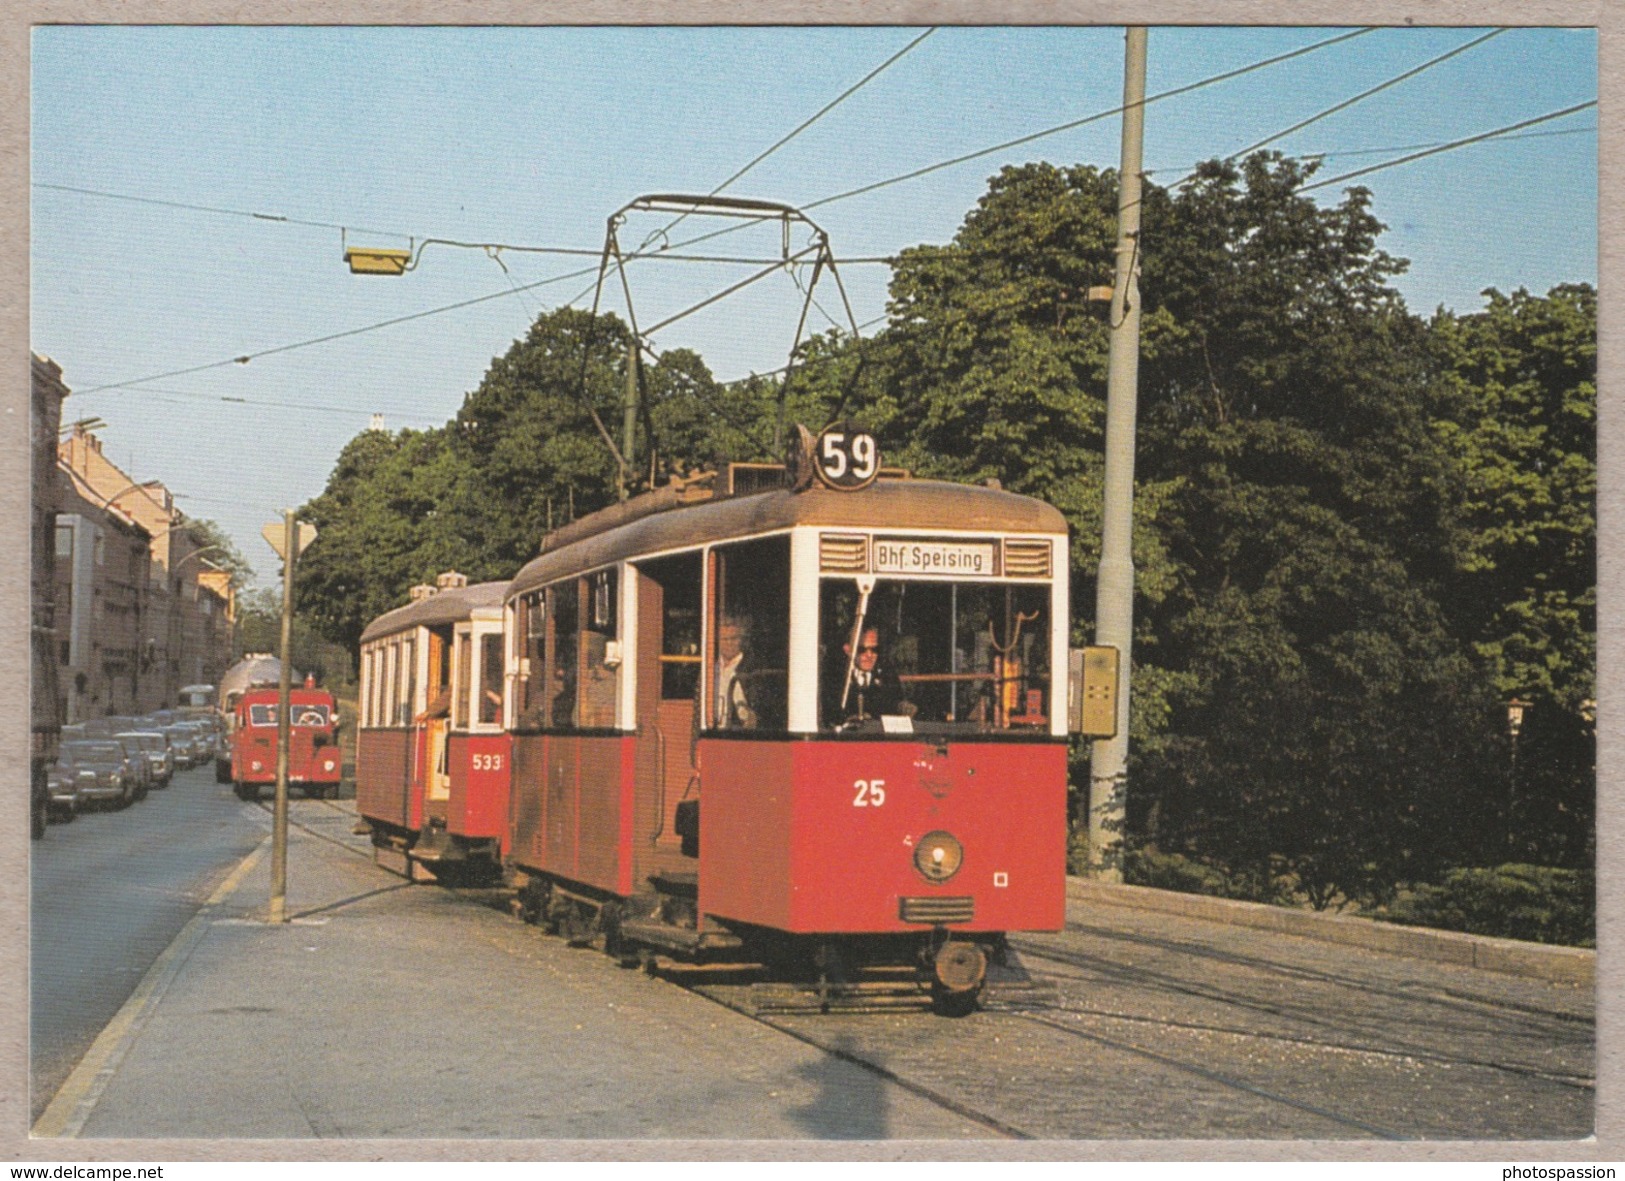 Wiener Stadtwerke-Verkehrsbetriebe - Triebwagen Typ A Und Beiwagen Type M3 - Linie 59 Wien 14, Handikape / Kennedy Brück - Tram